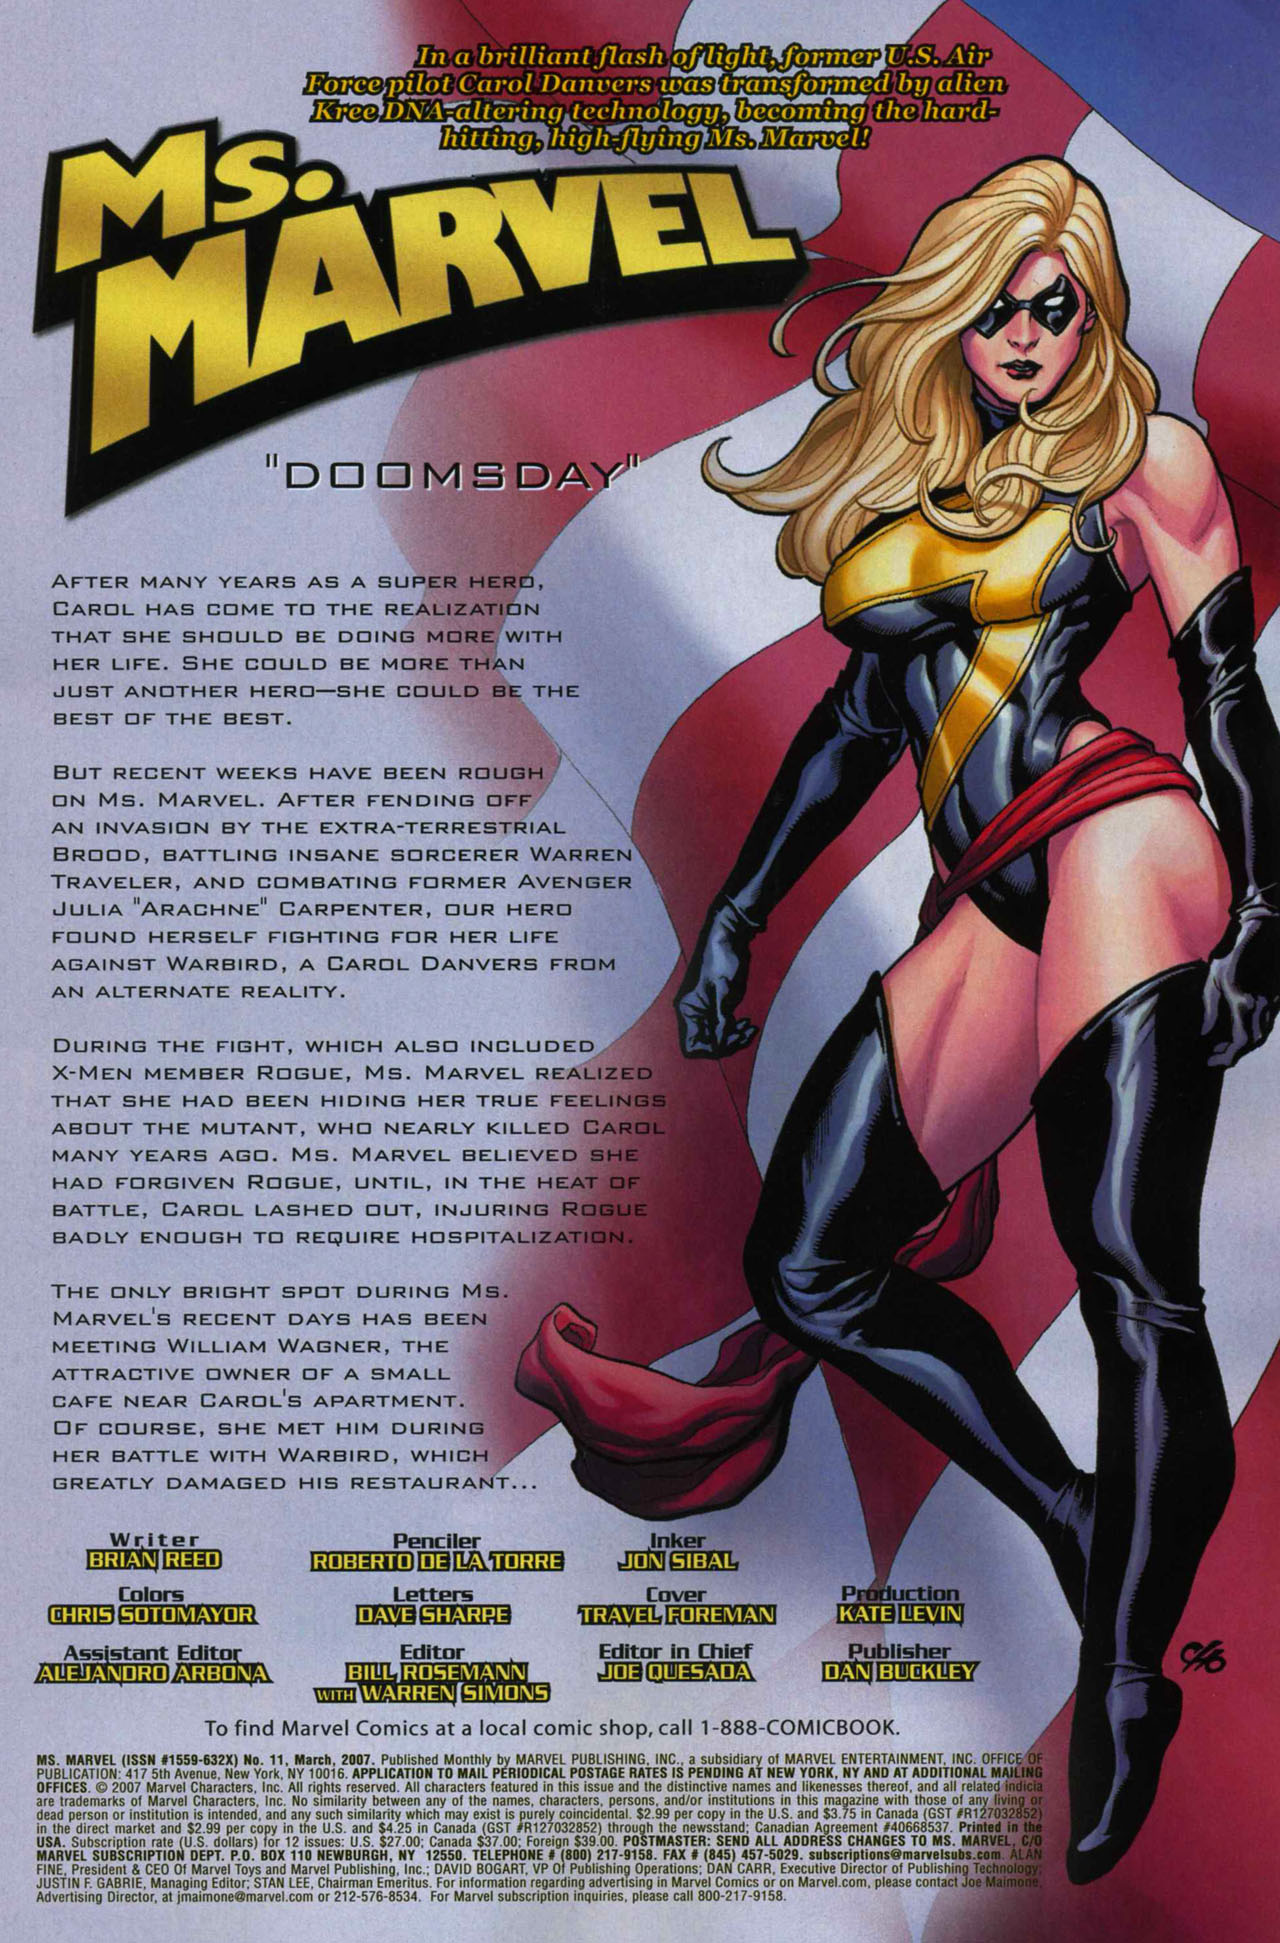 Ms Marvel #11 March 2007 Marvel Comics Reed De La Torre Sibal